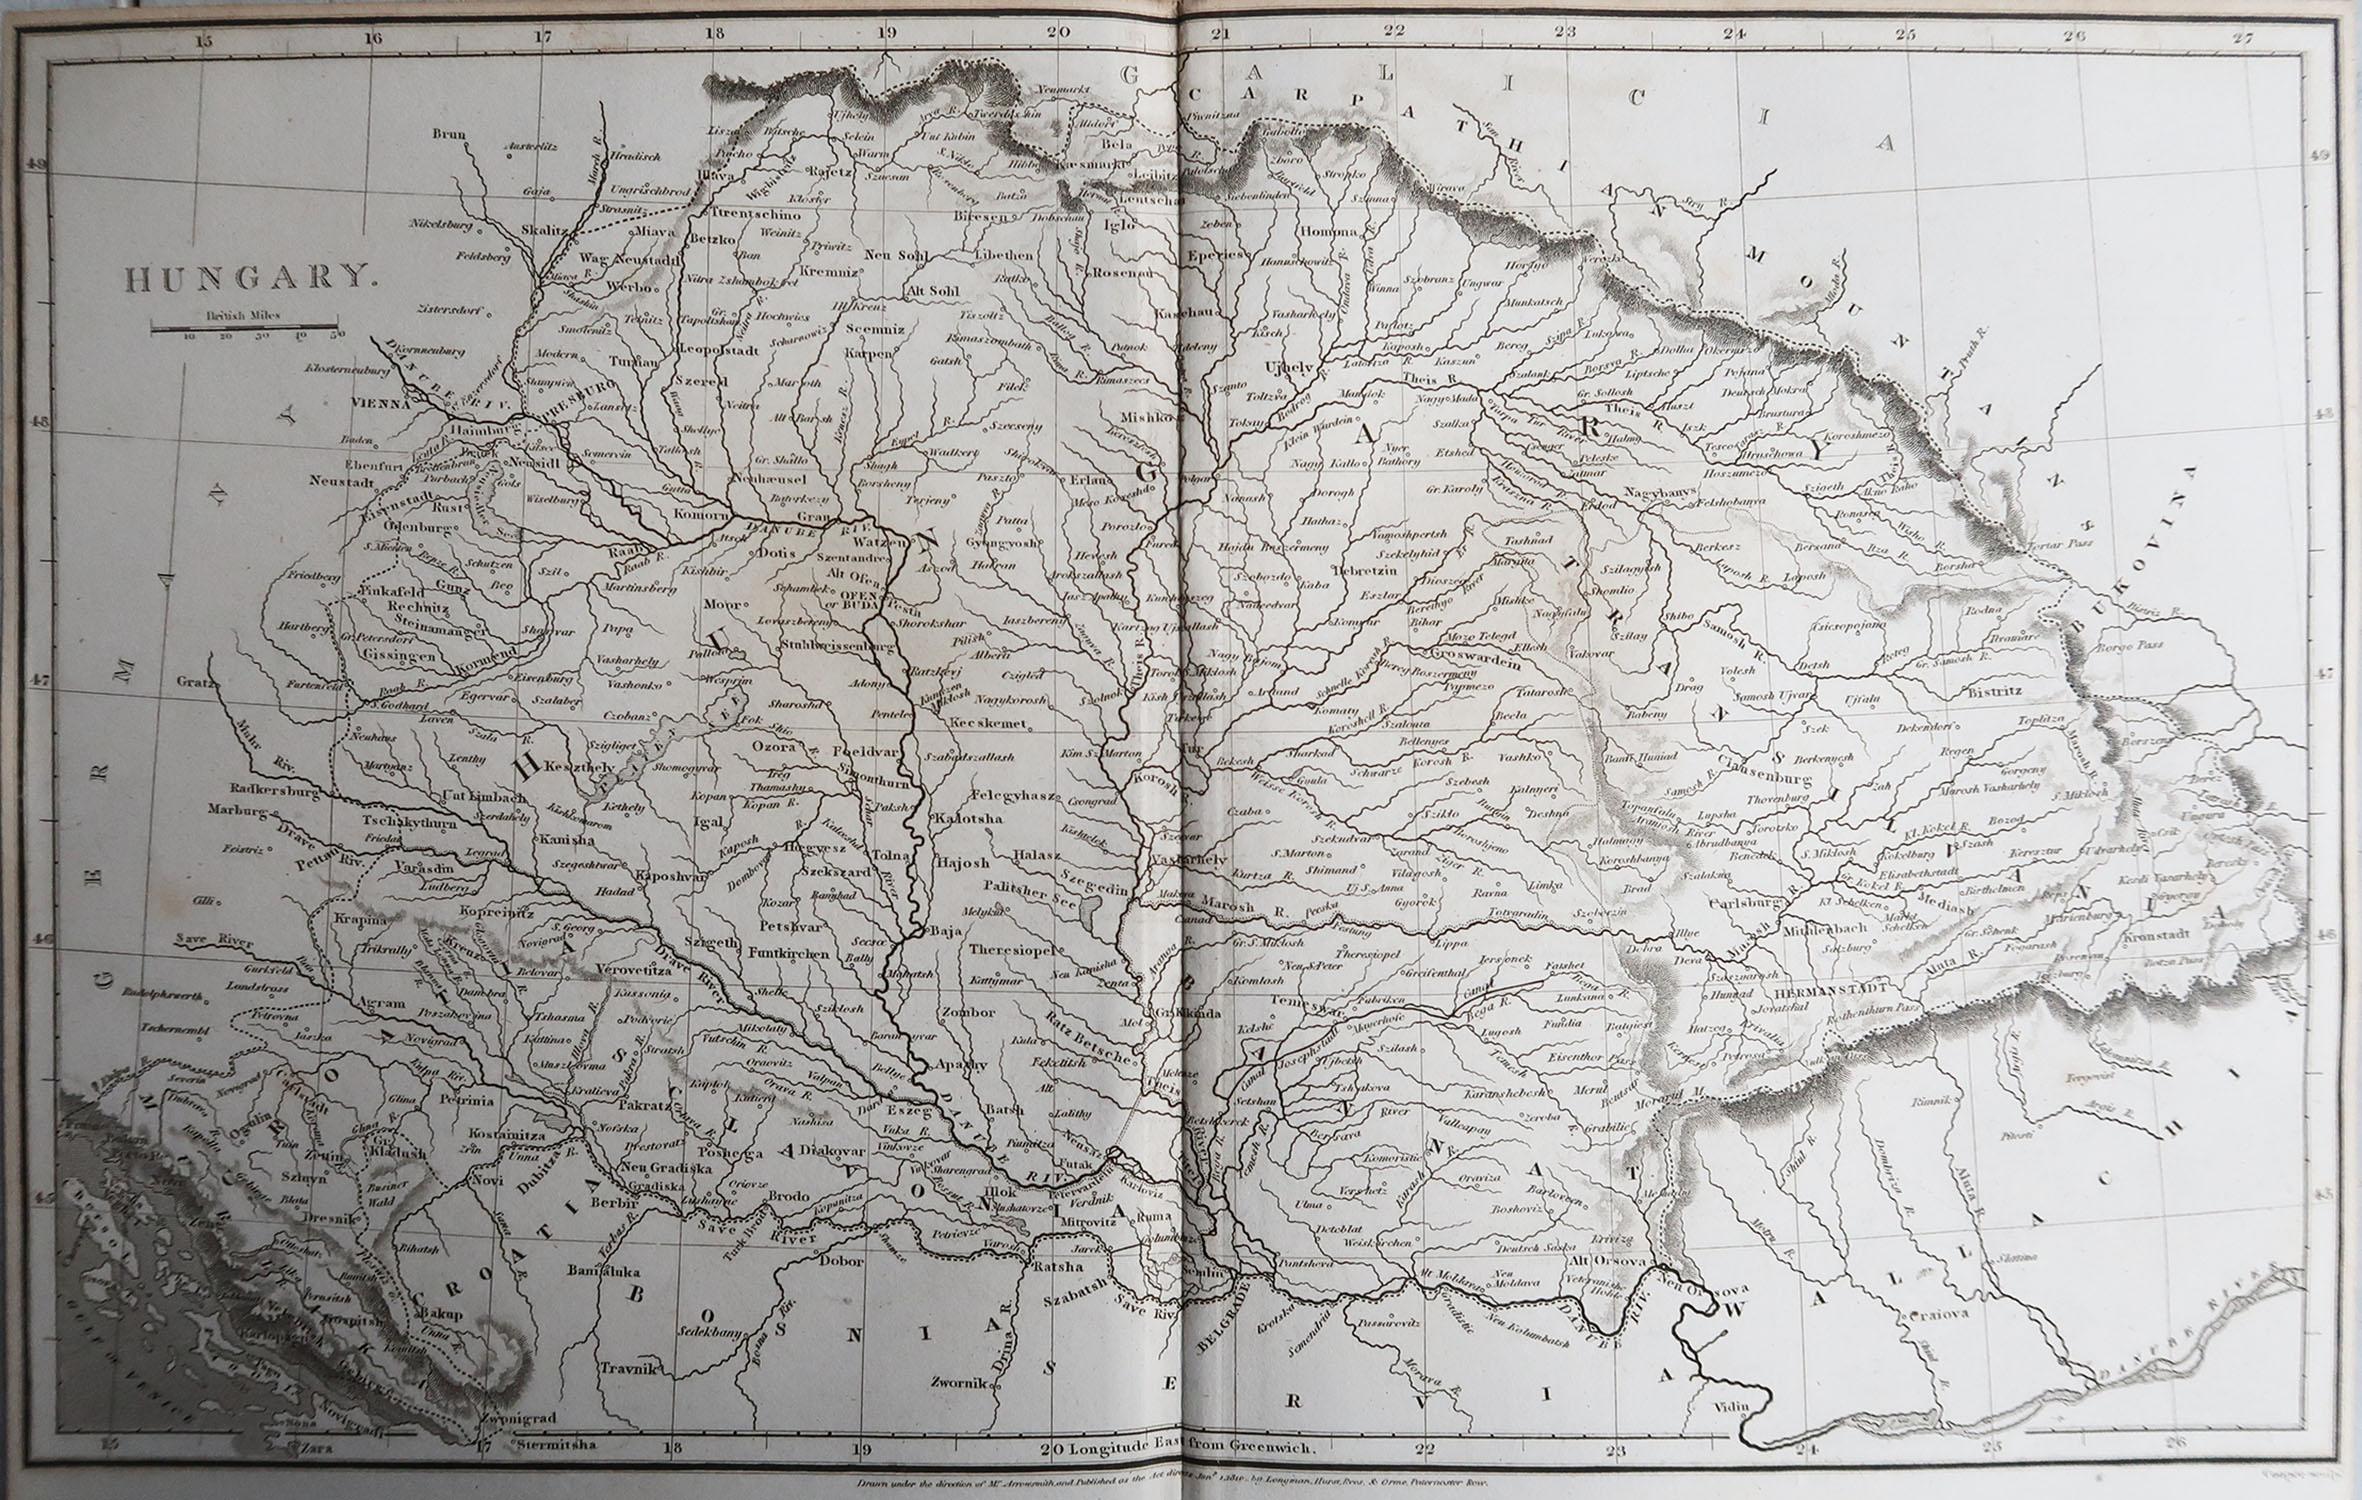 Große Karte von Ungarn

Gezeichnet unter der Leitung von Arrowsmith.

Kupferstich.

Veröffentlicht von Longman, Hurst, Rees, Orme und Brown, 1820

Ungerahmt.